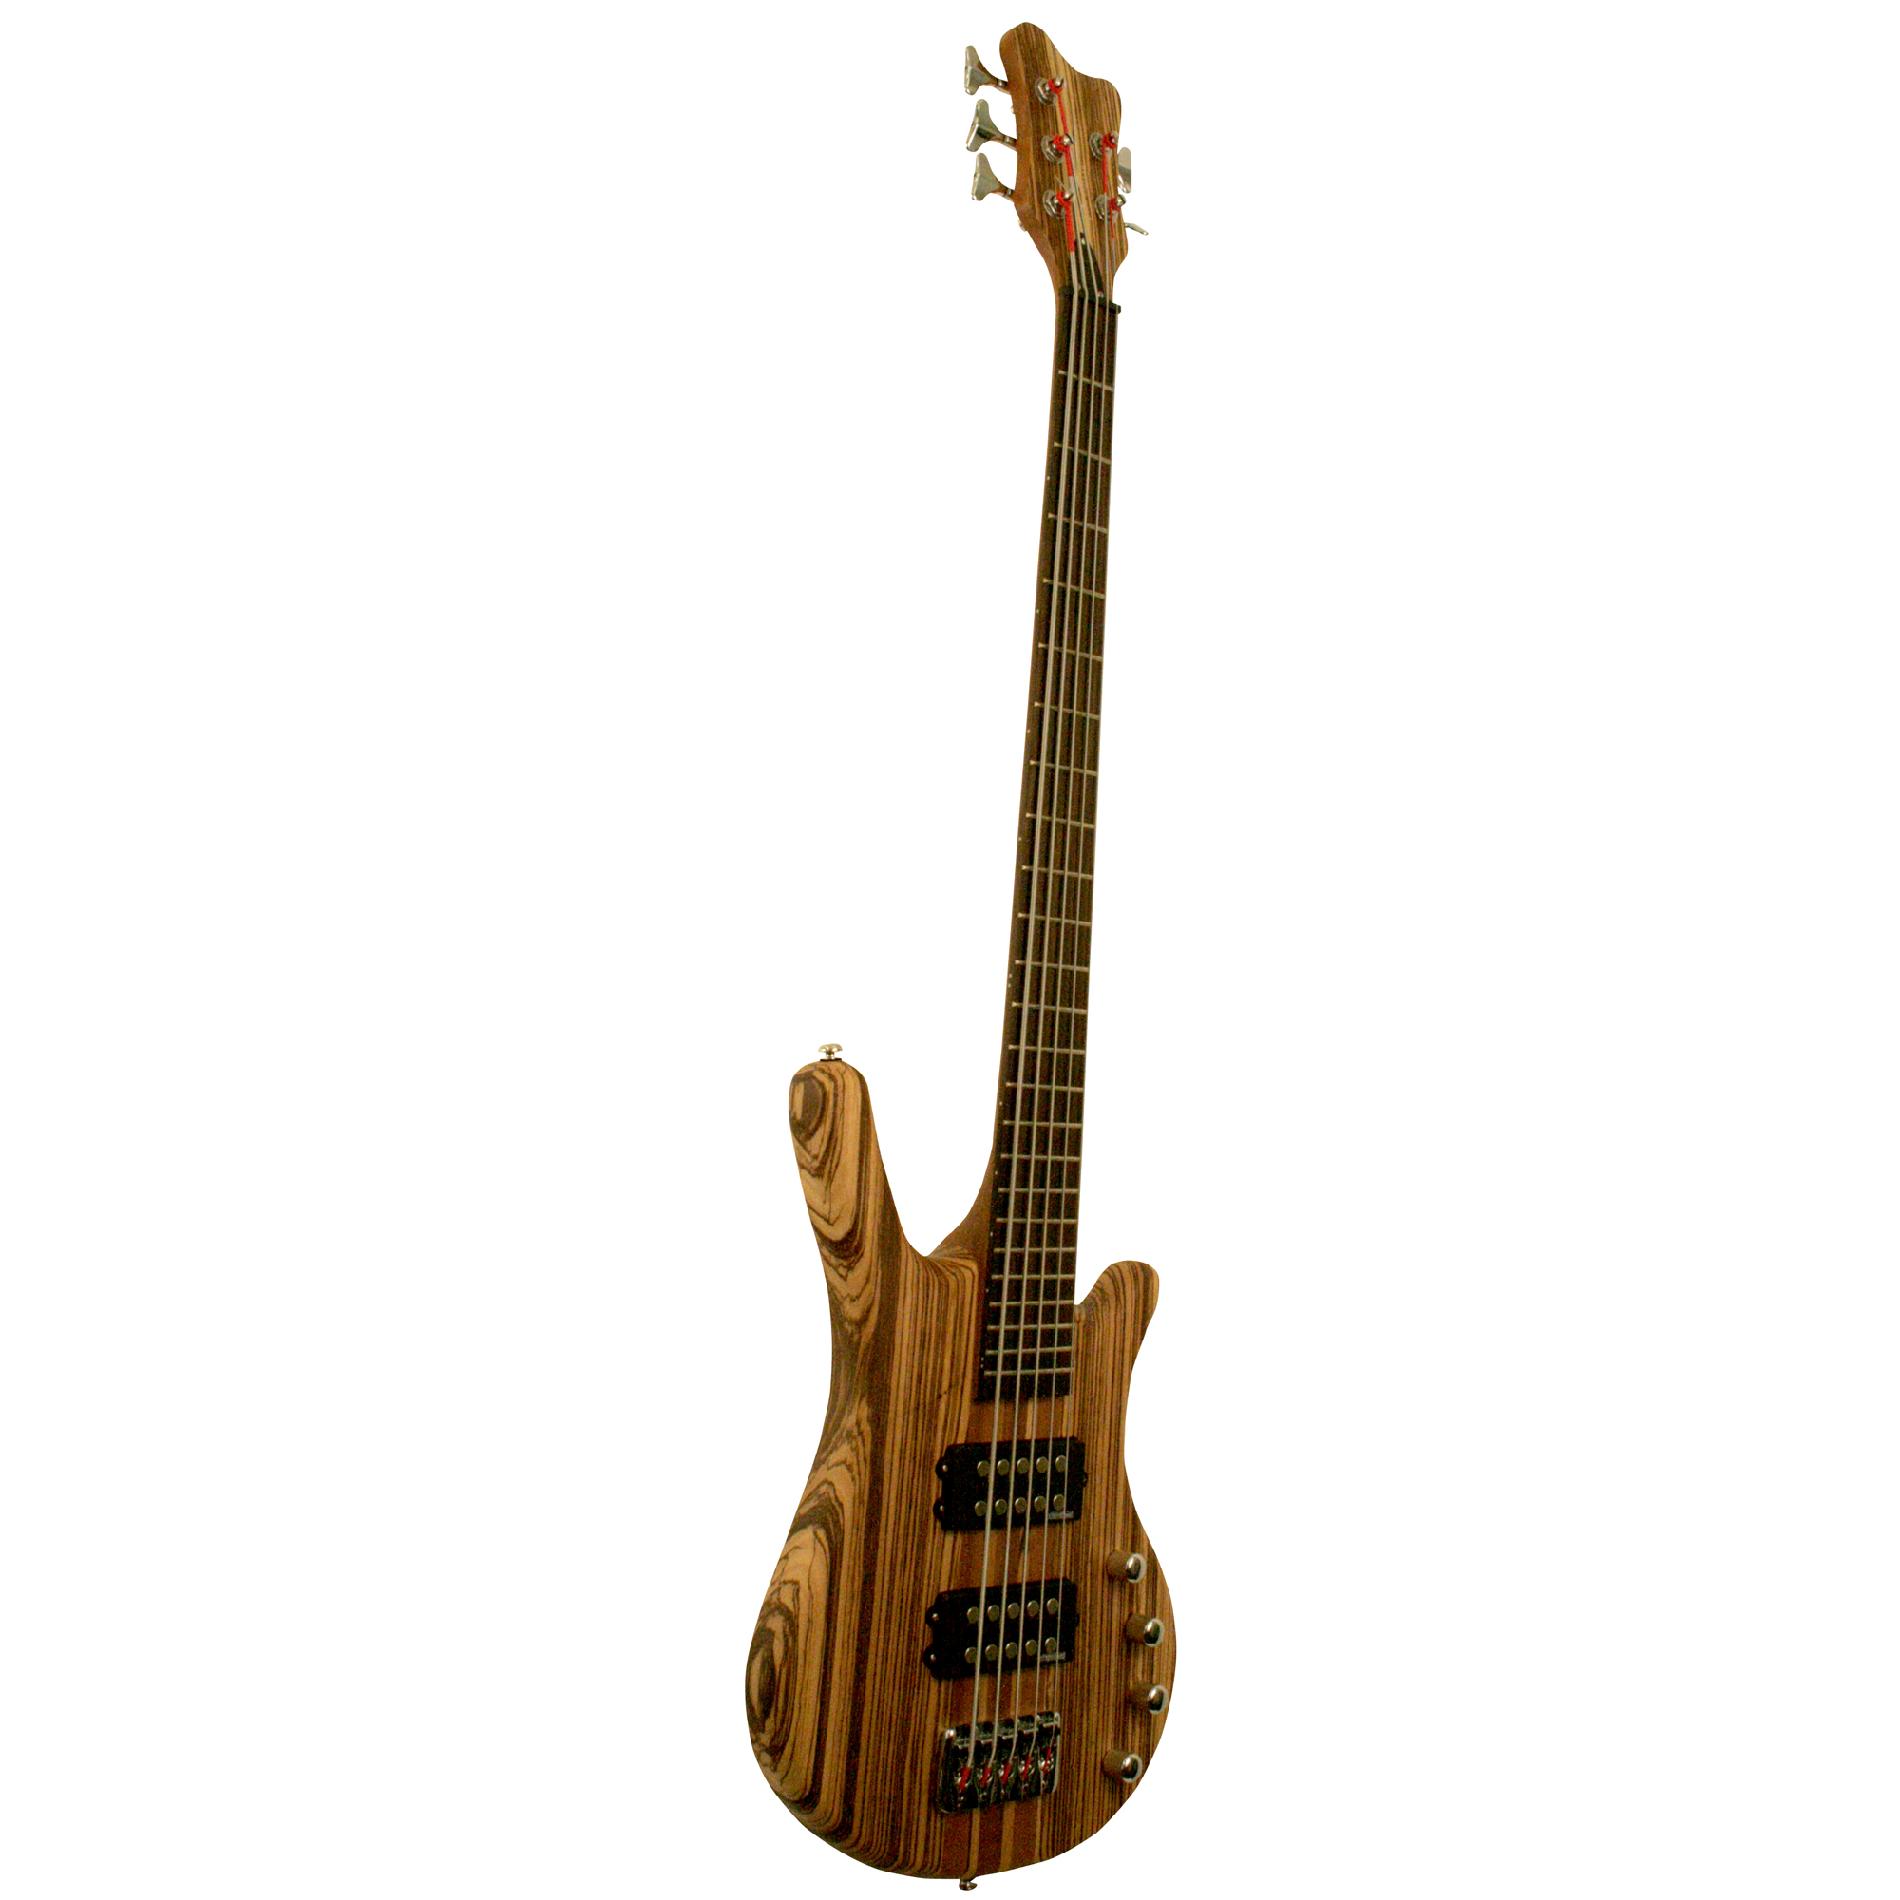 Kona 5 String Bass with Solid Zebra Wood Body